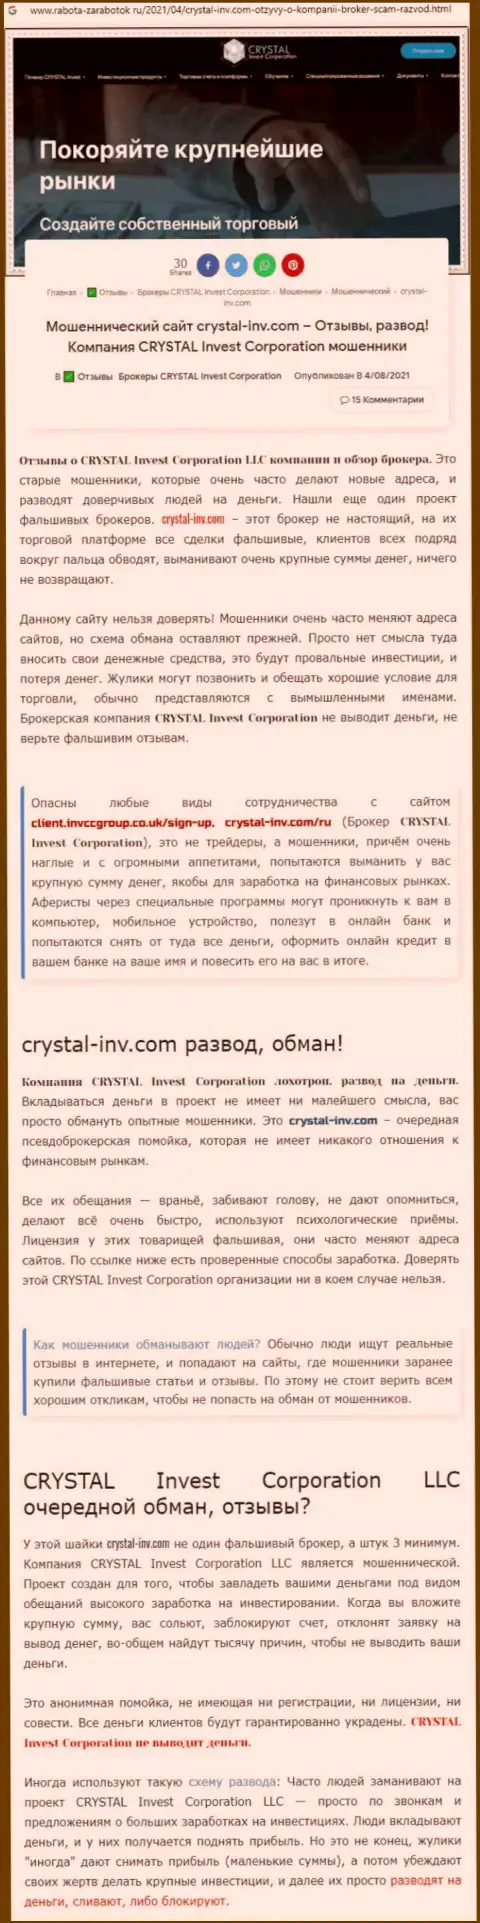 Материал, разоблачающий организацию Кристал Инвест, взятый с веб-сайта с обзорами различных контор